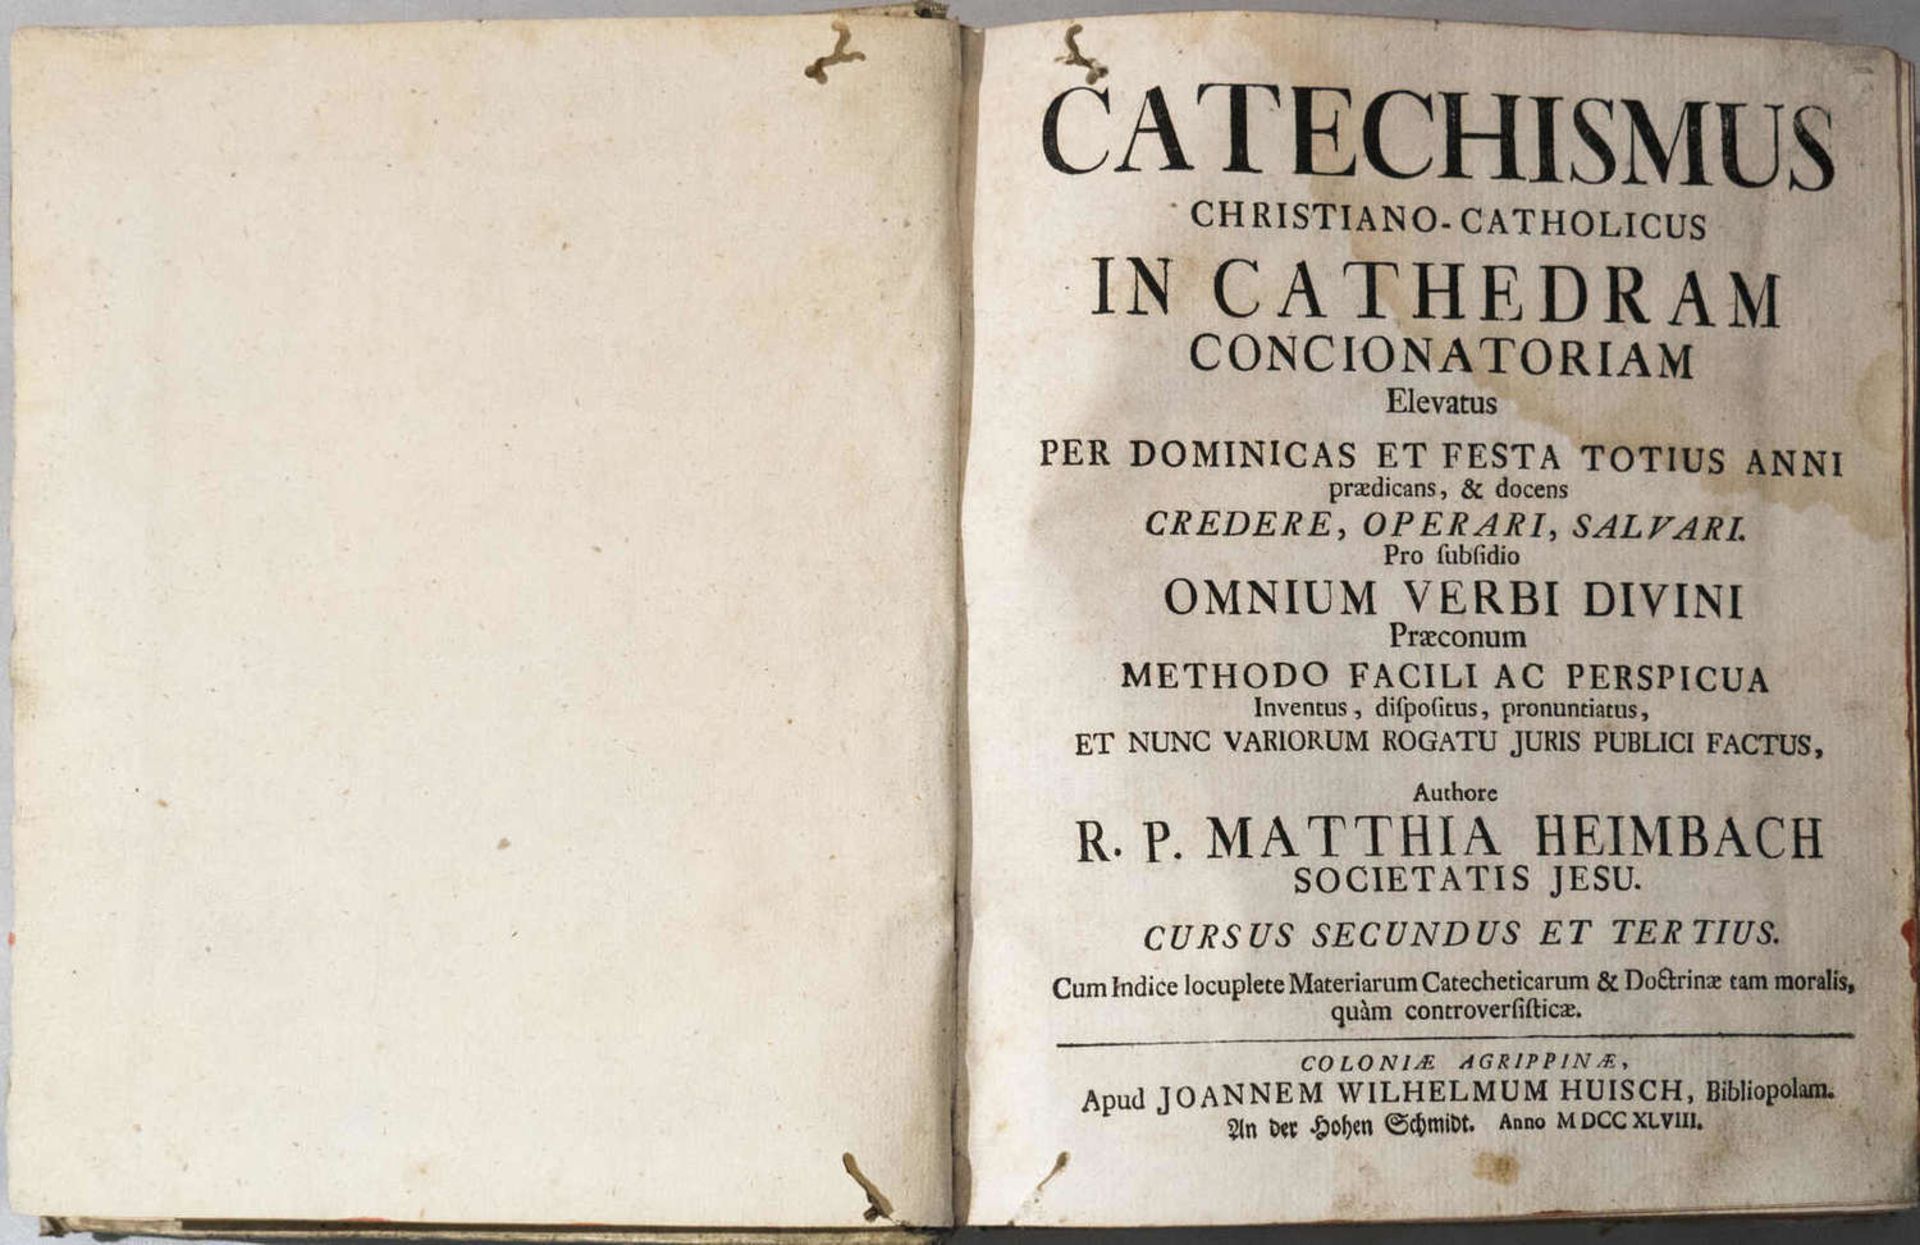 Catechismus christiano-catholicus in cathedram concionatoriam elevatus. Per Dominicas et festa